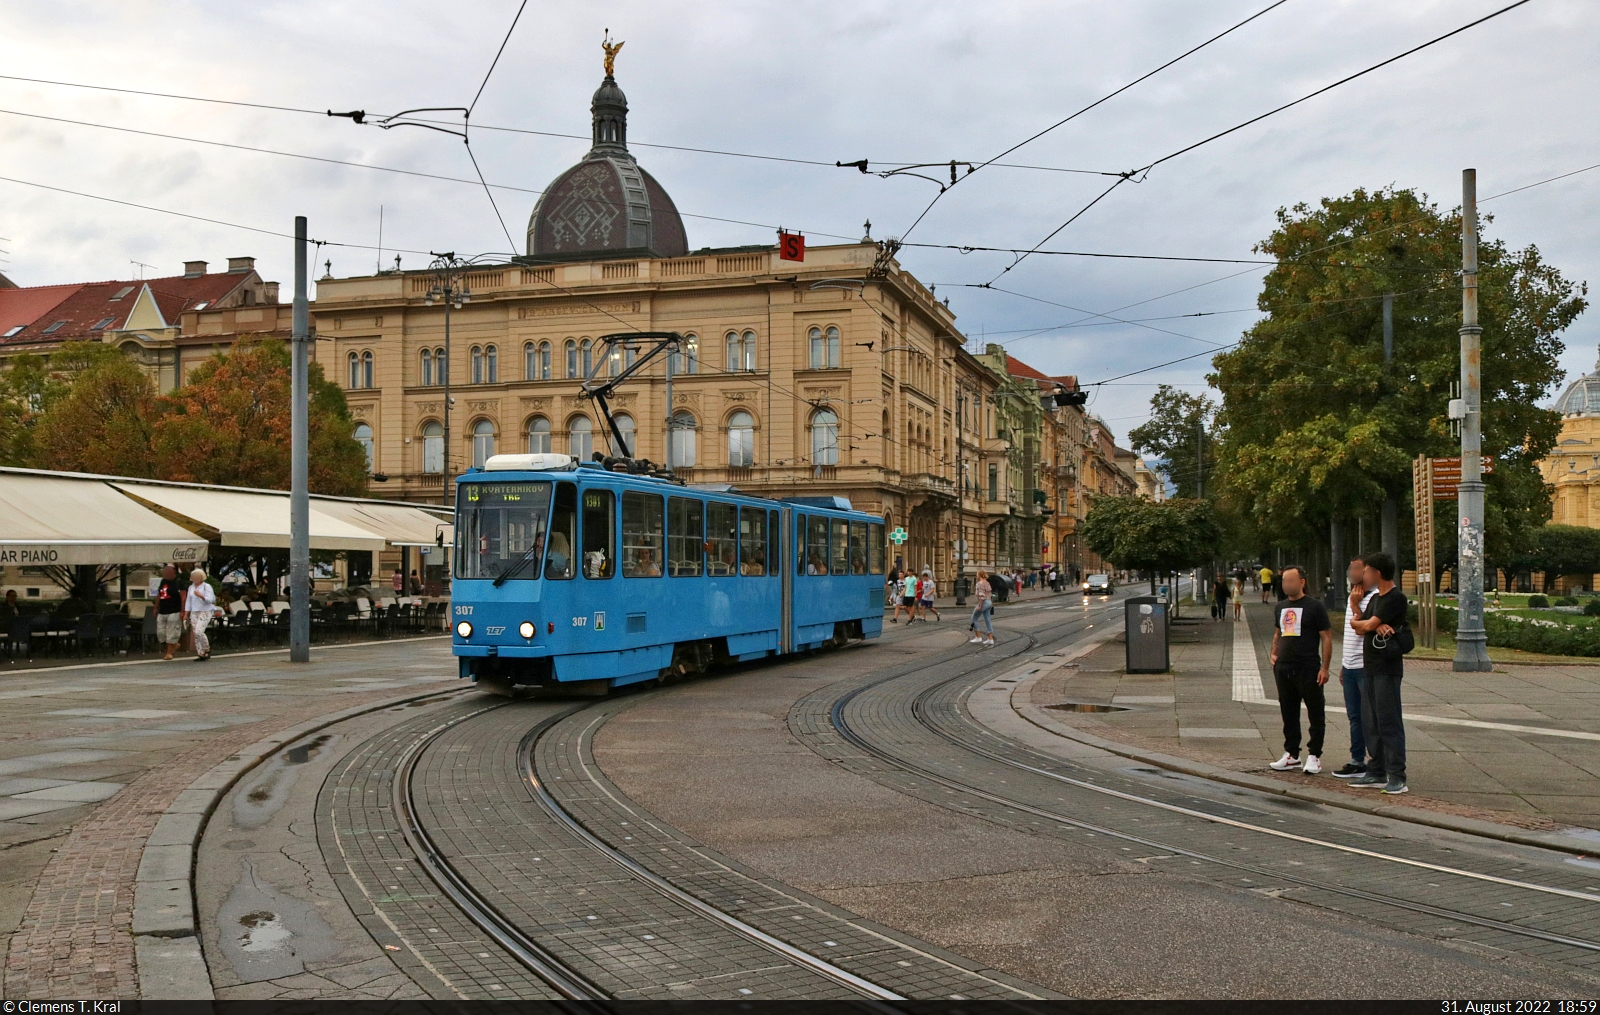 Vor der Kulisse der Stadtbibliothek Zagreb (HR) erreicht Wagen 307 des Typs Tatra KT4YU die Haltestelle Glavni kolodvor, zu Deutsch Hauptbahnhof.

🧰 Zagrebački električni tramvaj (ZET)
🚋 Linie 13 Žitnjak–Kvaternikov trg
🕓 31.8.2022 | 18:59 Uhr